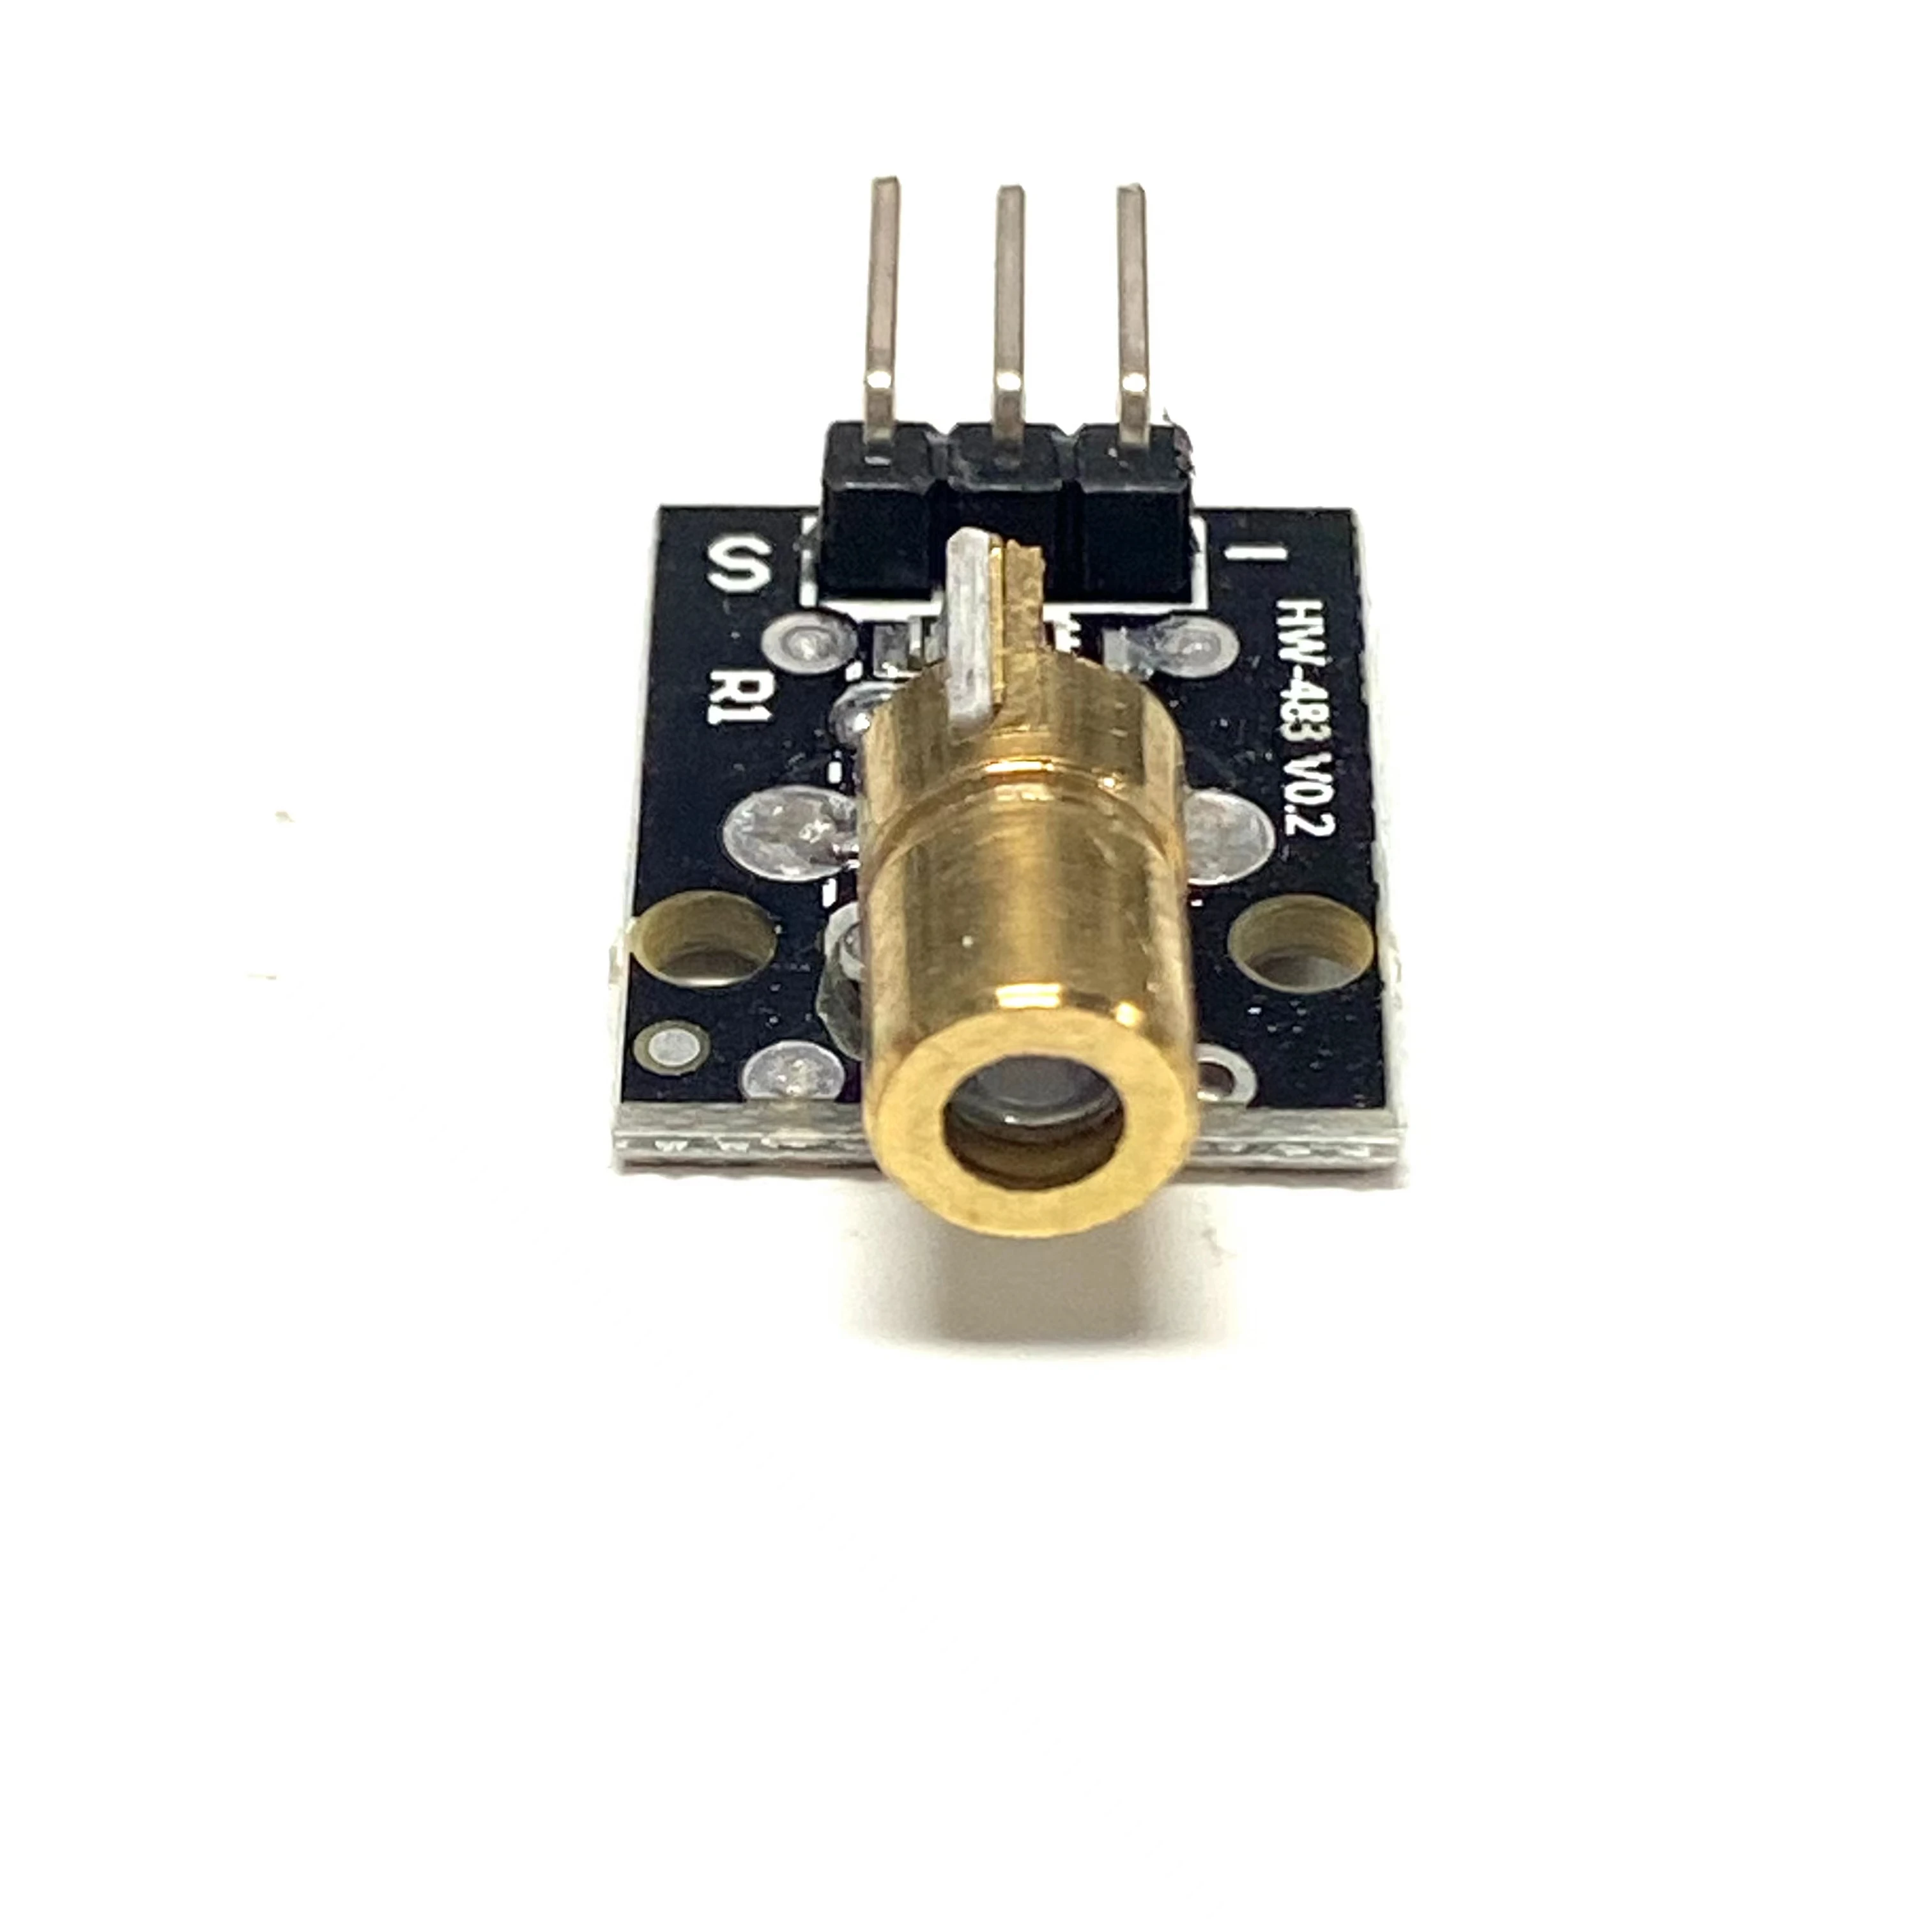 

1pcs KY-008 650nm Laser sensor Module 6mm 5V 5mW Red Laser Dot Diode Copper Head